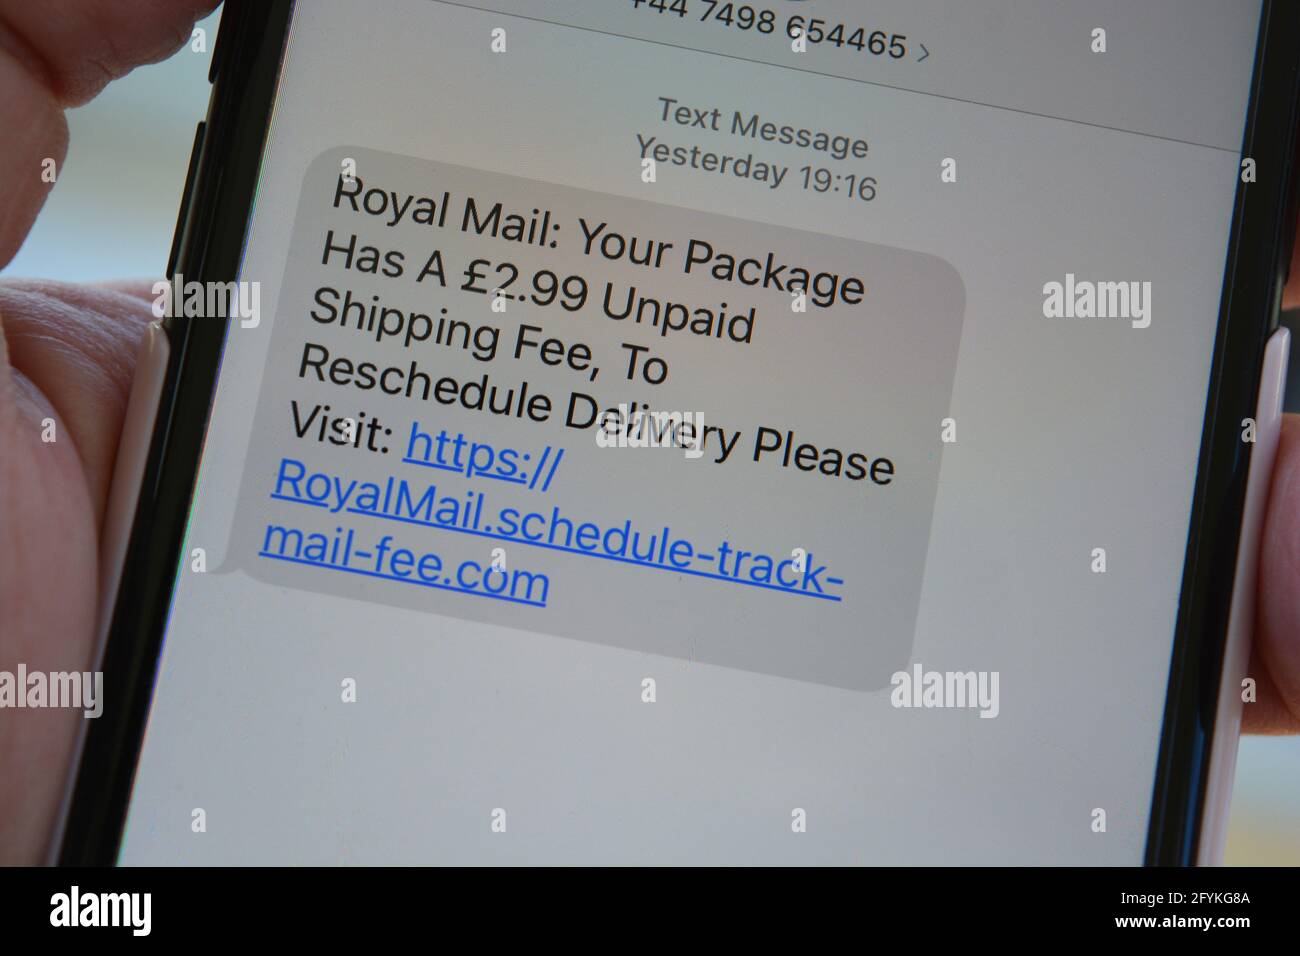 Phishing-Text, Nachricht auf dem Bildschirm, in der angegeben wird, dass das Paket eine unbezahlte Versandgebühr enthält, und der Empfänger muss auf den Link klicken, um die Lieferung neu zu planen Stockfoto